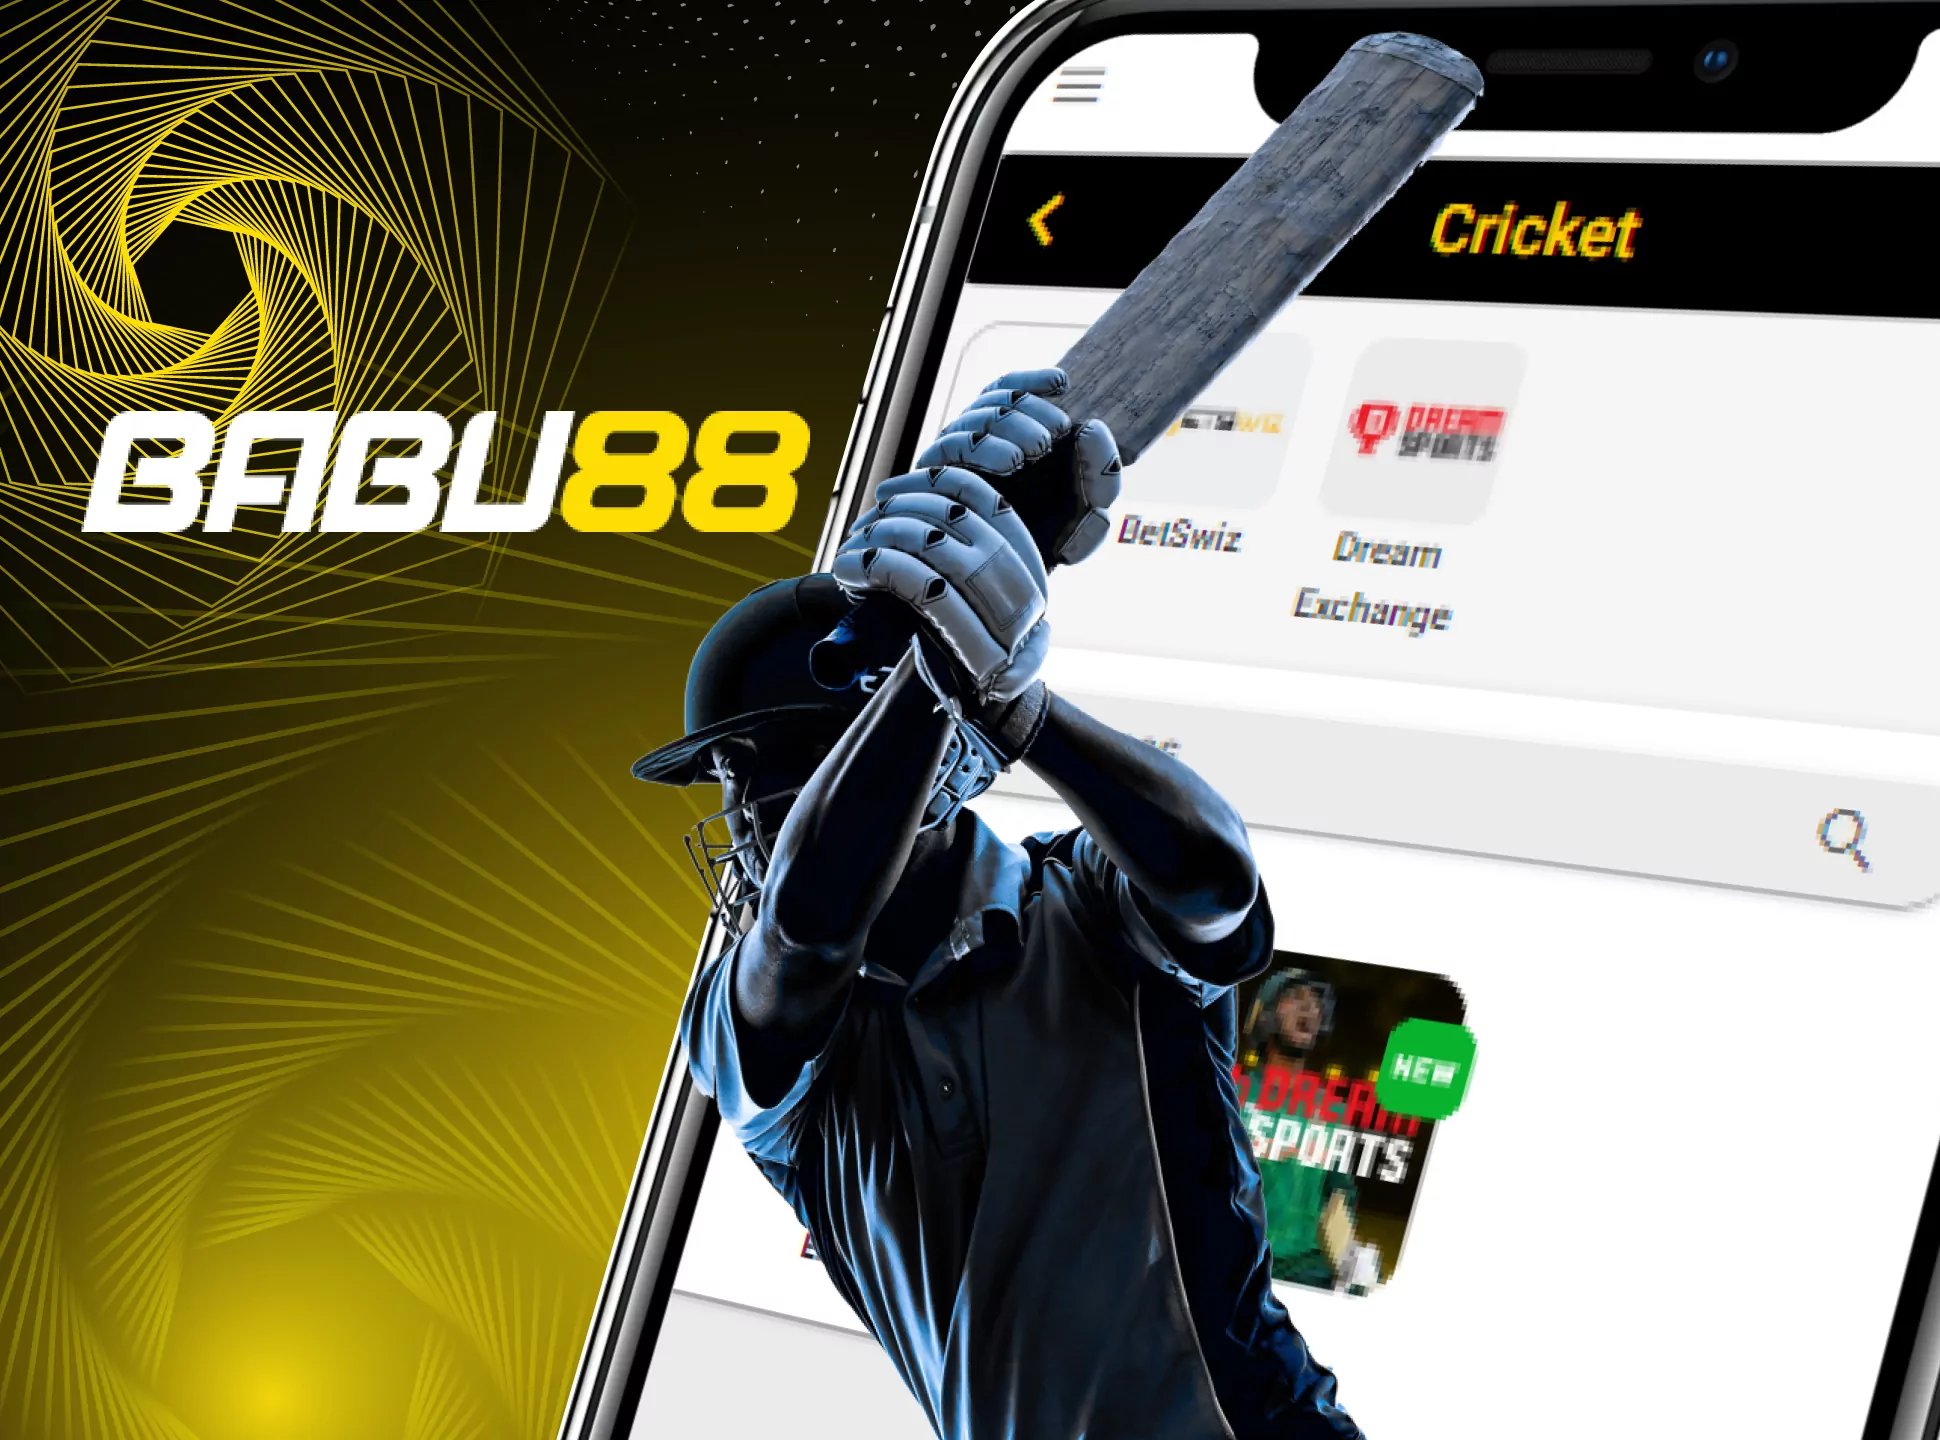 Babu88 অ্যাপে একটি বিস্তৃত ক্রিকেট লাইন রয়েছে।